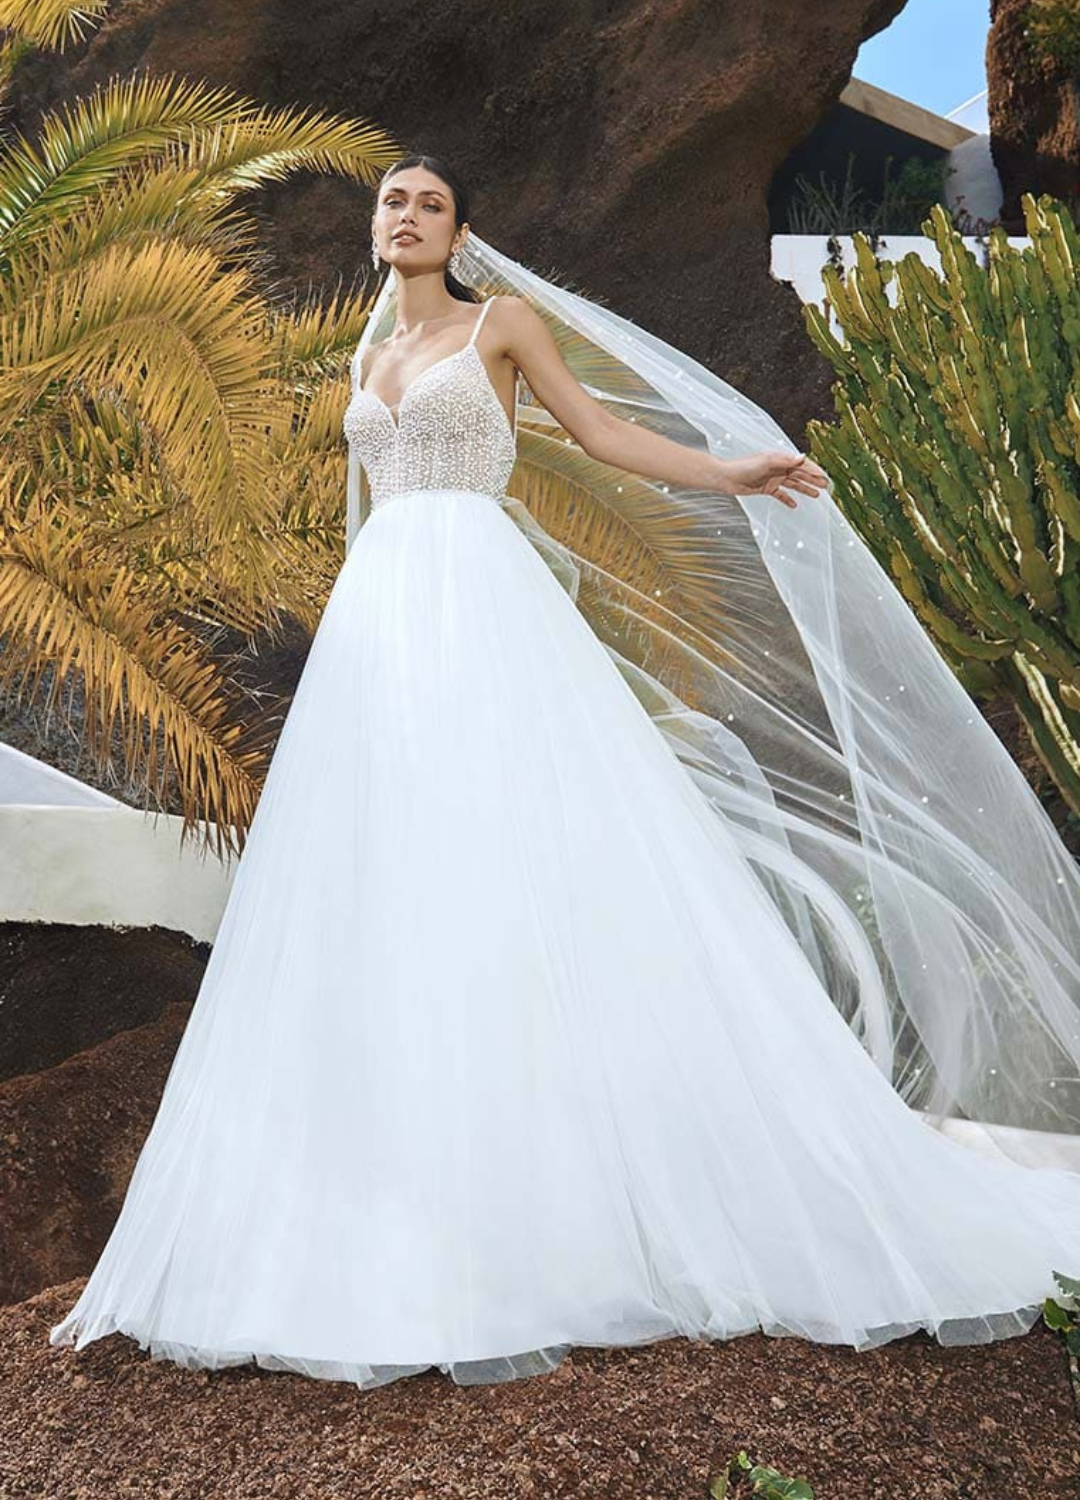 Obrázek ženy se svatebními šaty Miller od značky Pronovias